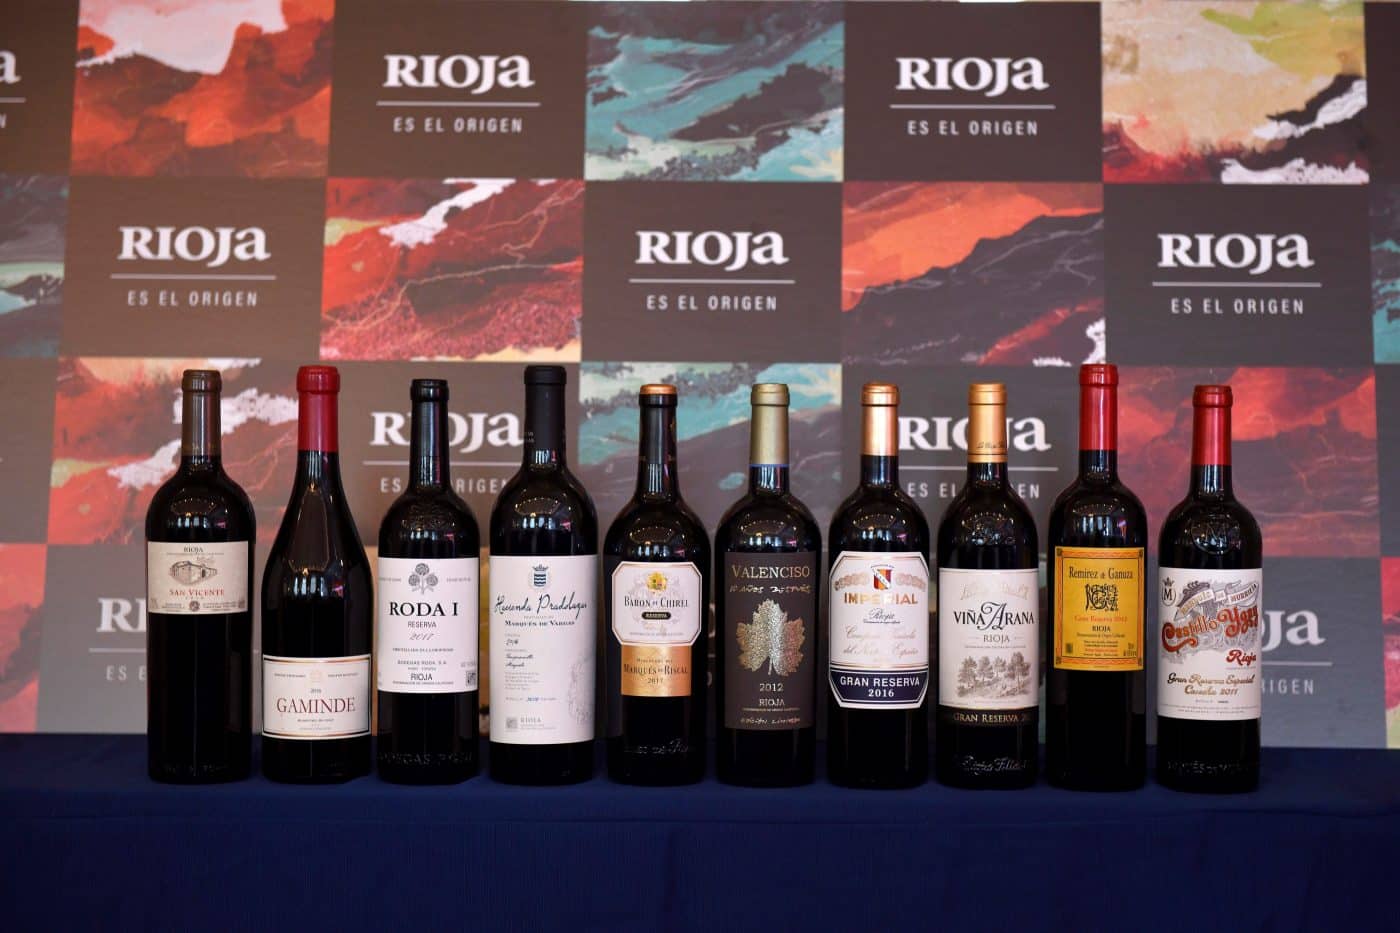 60 bodegas de Rioja participan en Madrid en una cata exclusiva con vinos "capaces de emocionar" 2